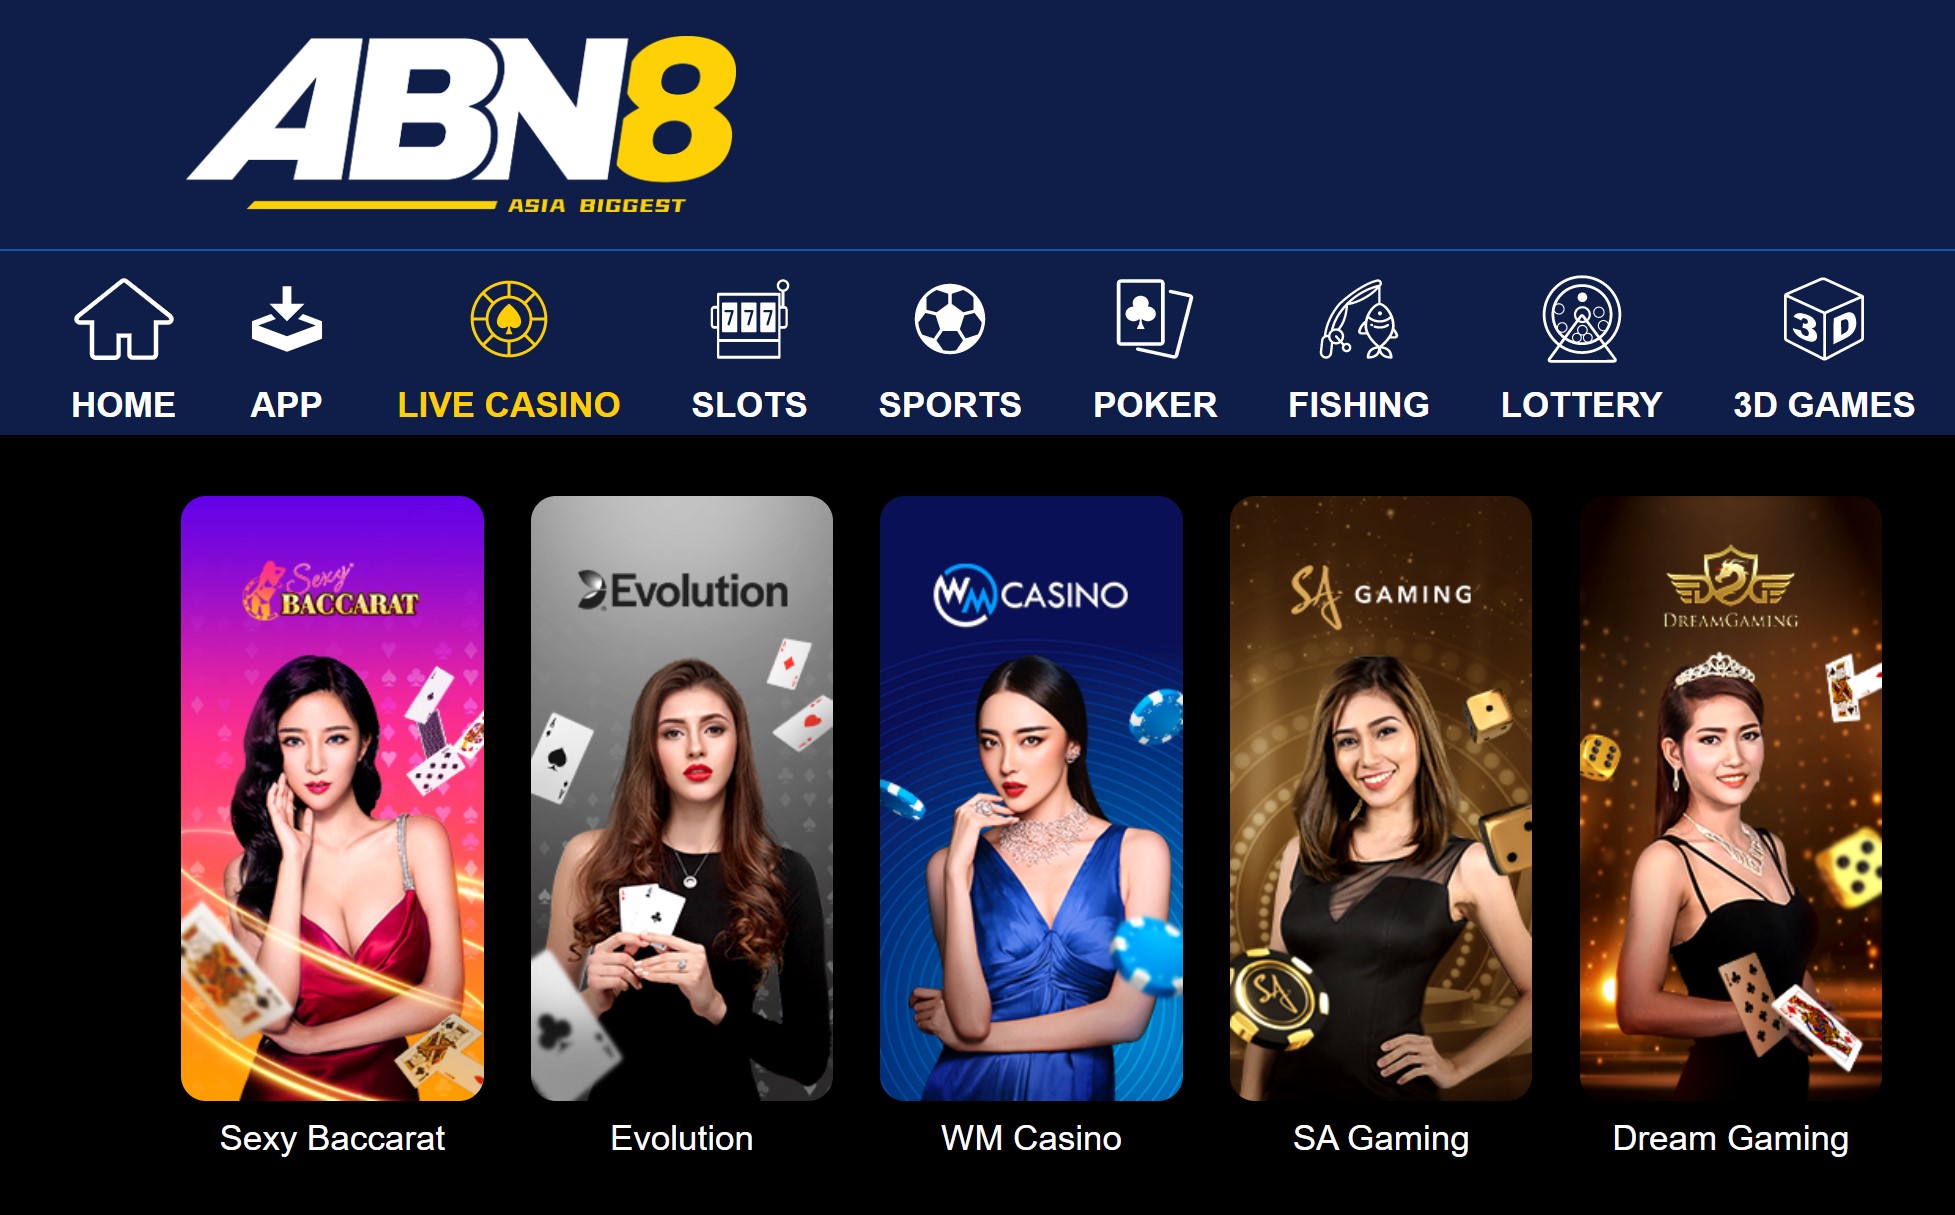 Contoh permainan kasino ABN8 Singapura